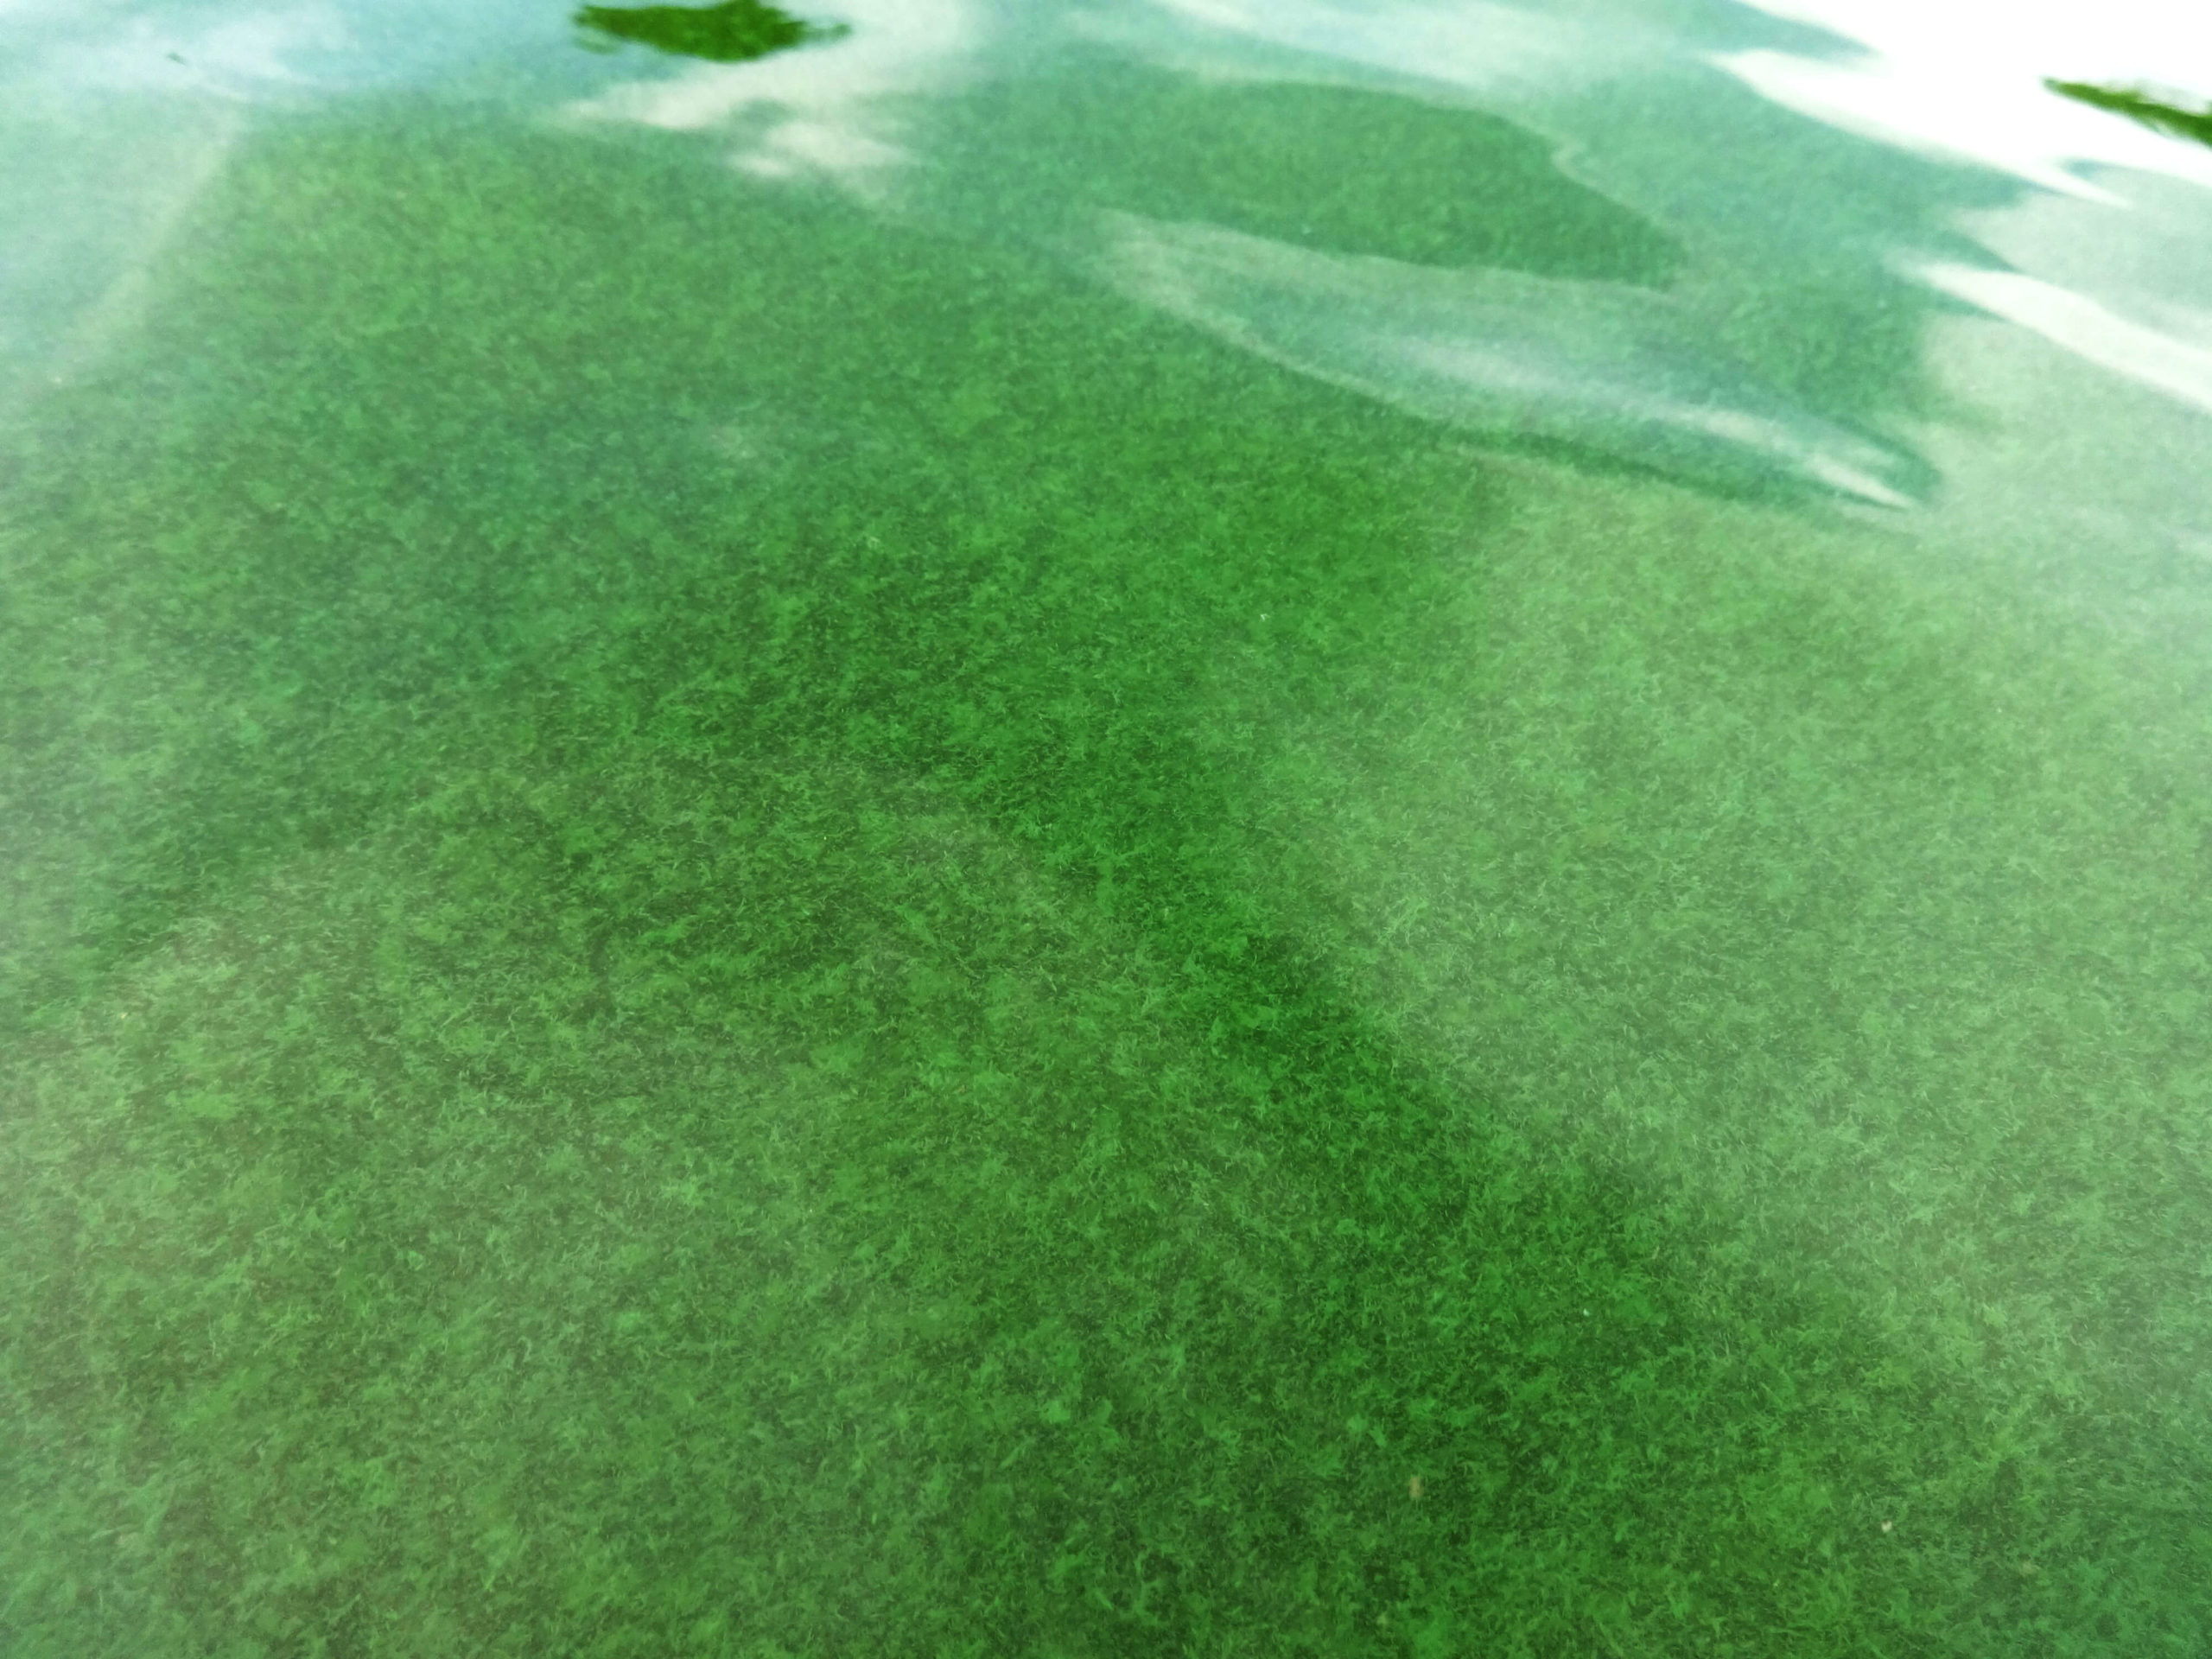 Green algae in pool water